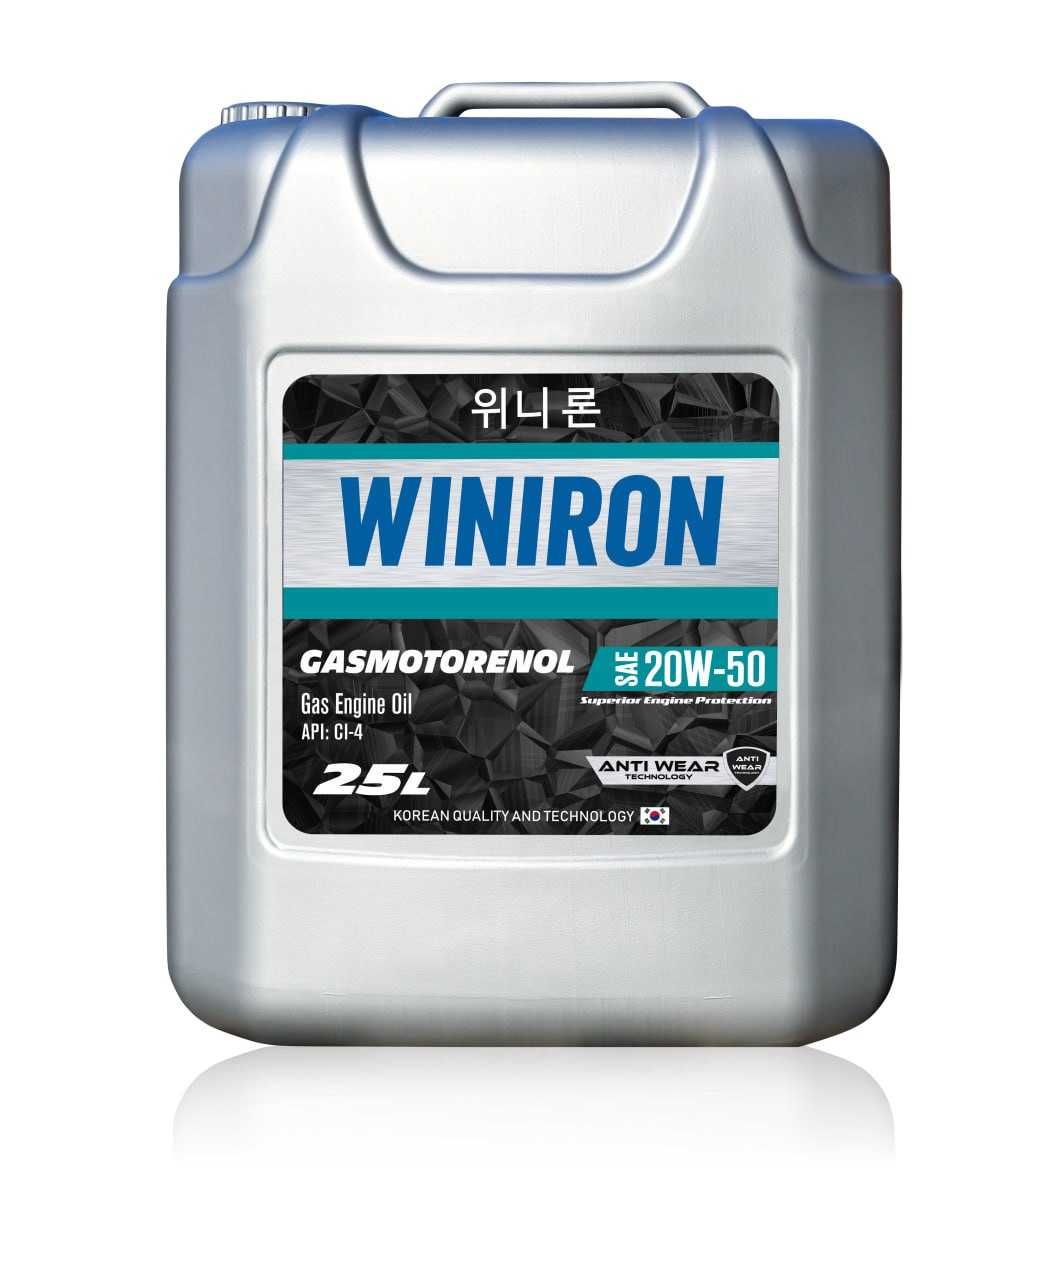 Winiron Gasmotorenol 20W-50